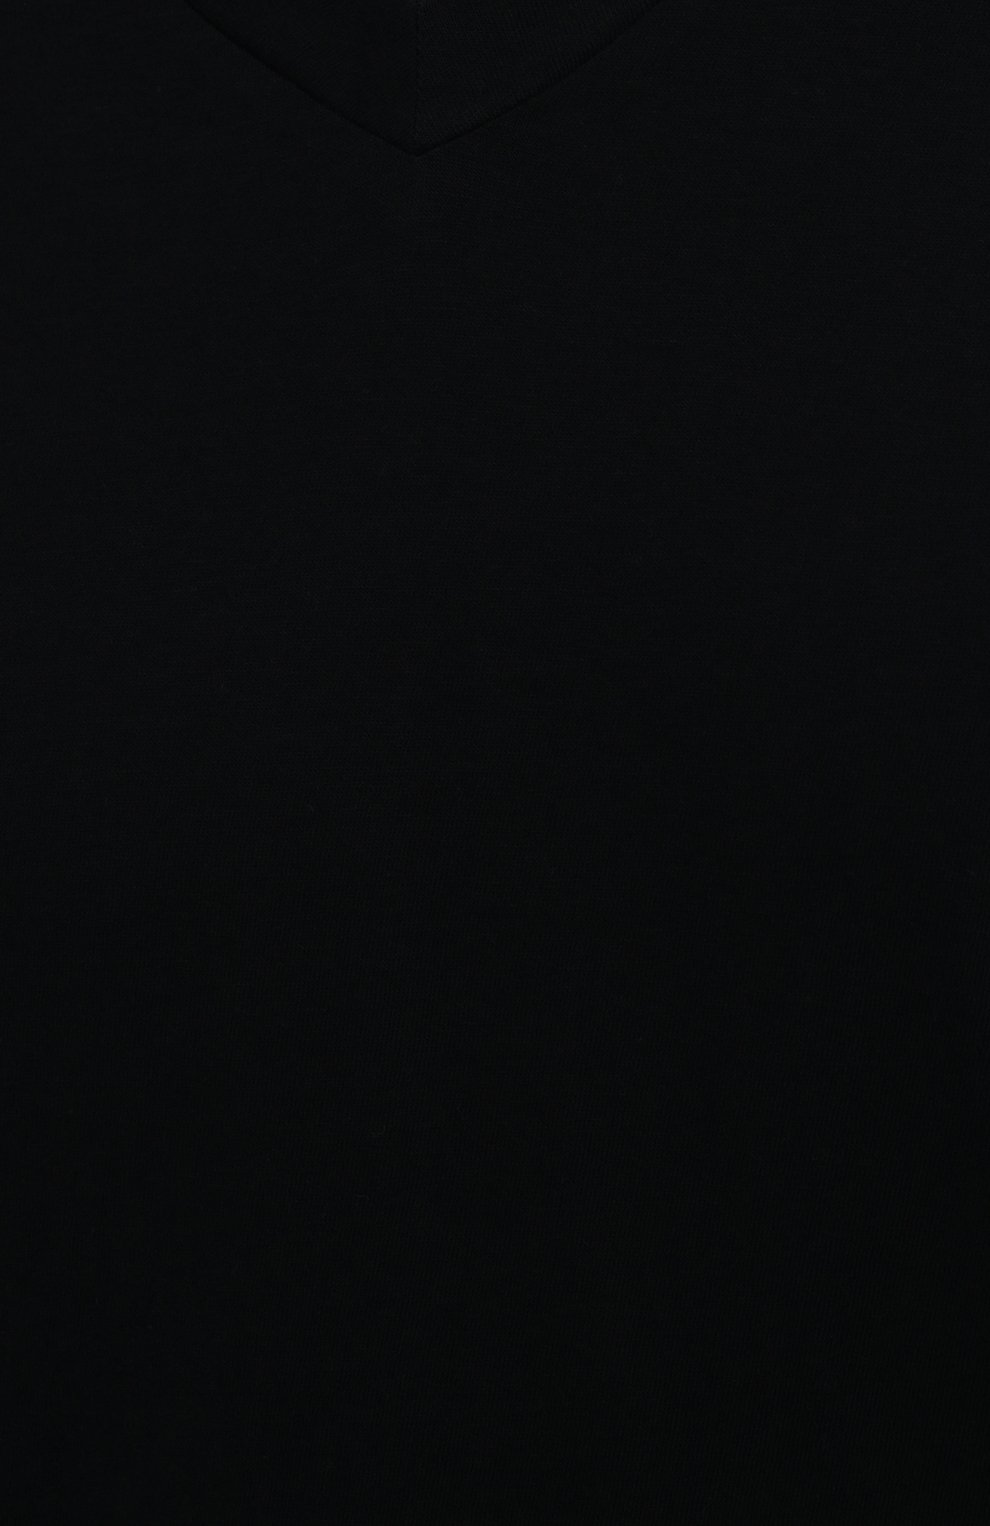 Мужская хлопковая футболка JAMES PERSE темно-синего цвета, арт. MLJ3352 | Фото 5 (Принт: Без принта; Рукава: Короткие; Длина (для топов): Стандартные; Материал внешний: Хлопок; Стили: Кэжуэл; Статус проверки: Проверена категория)